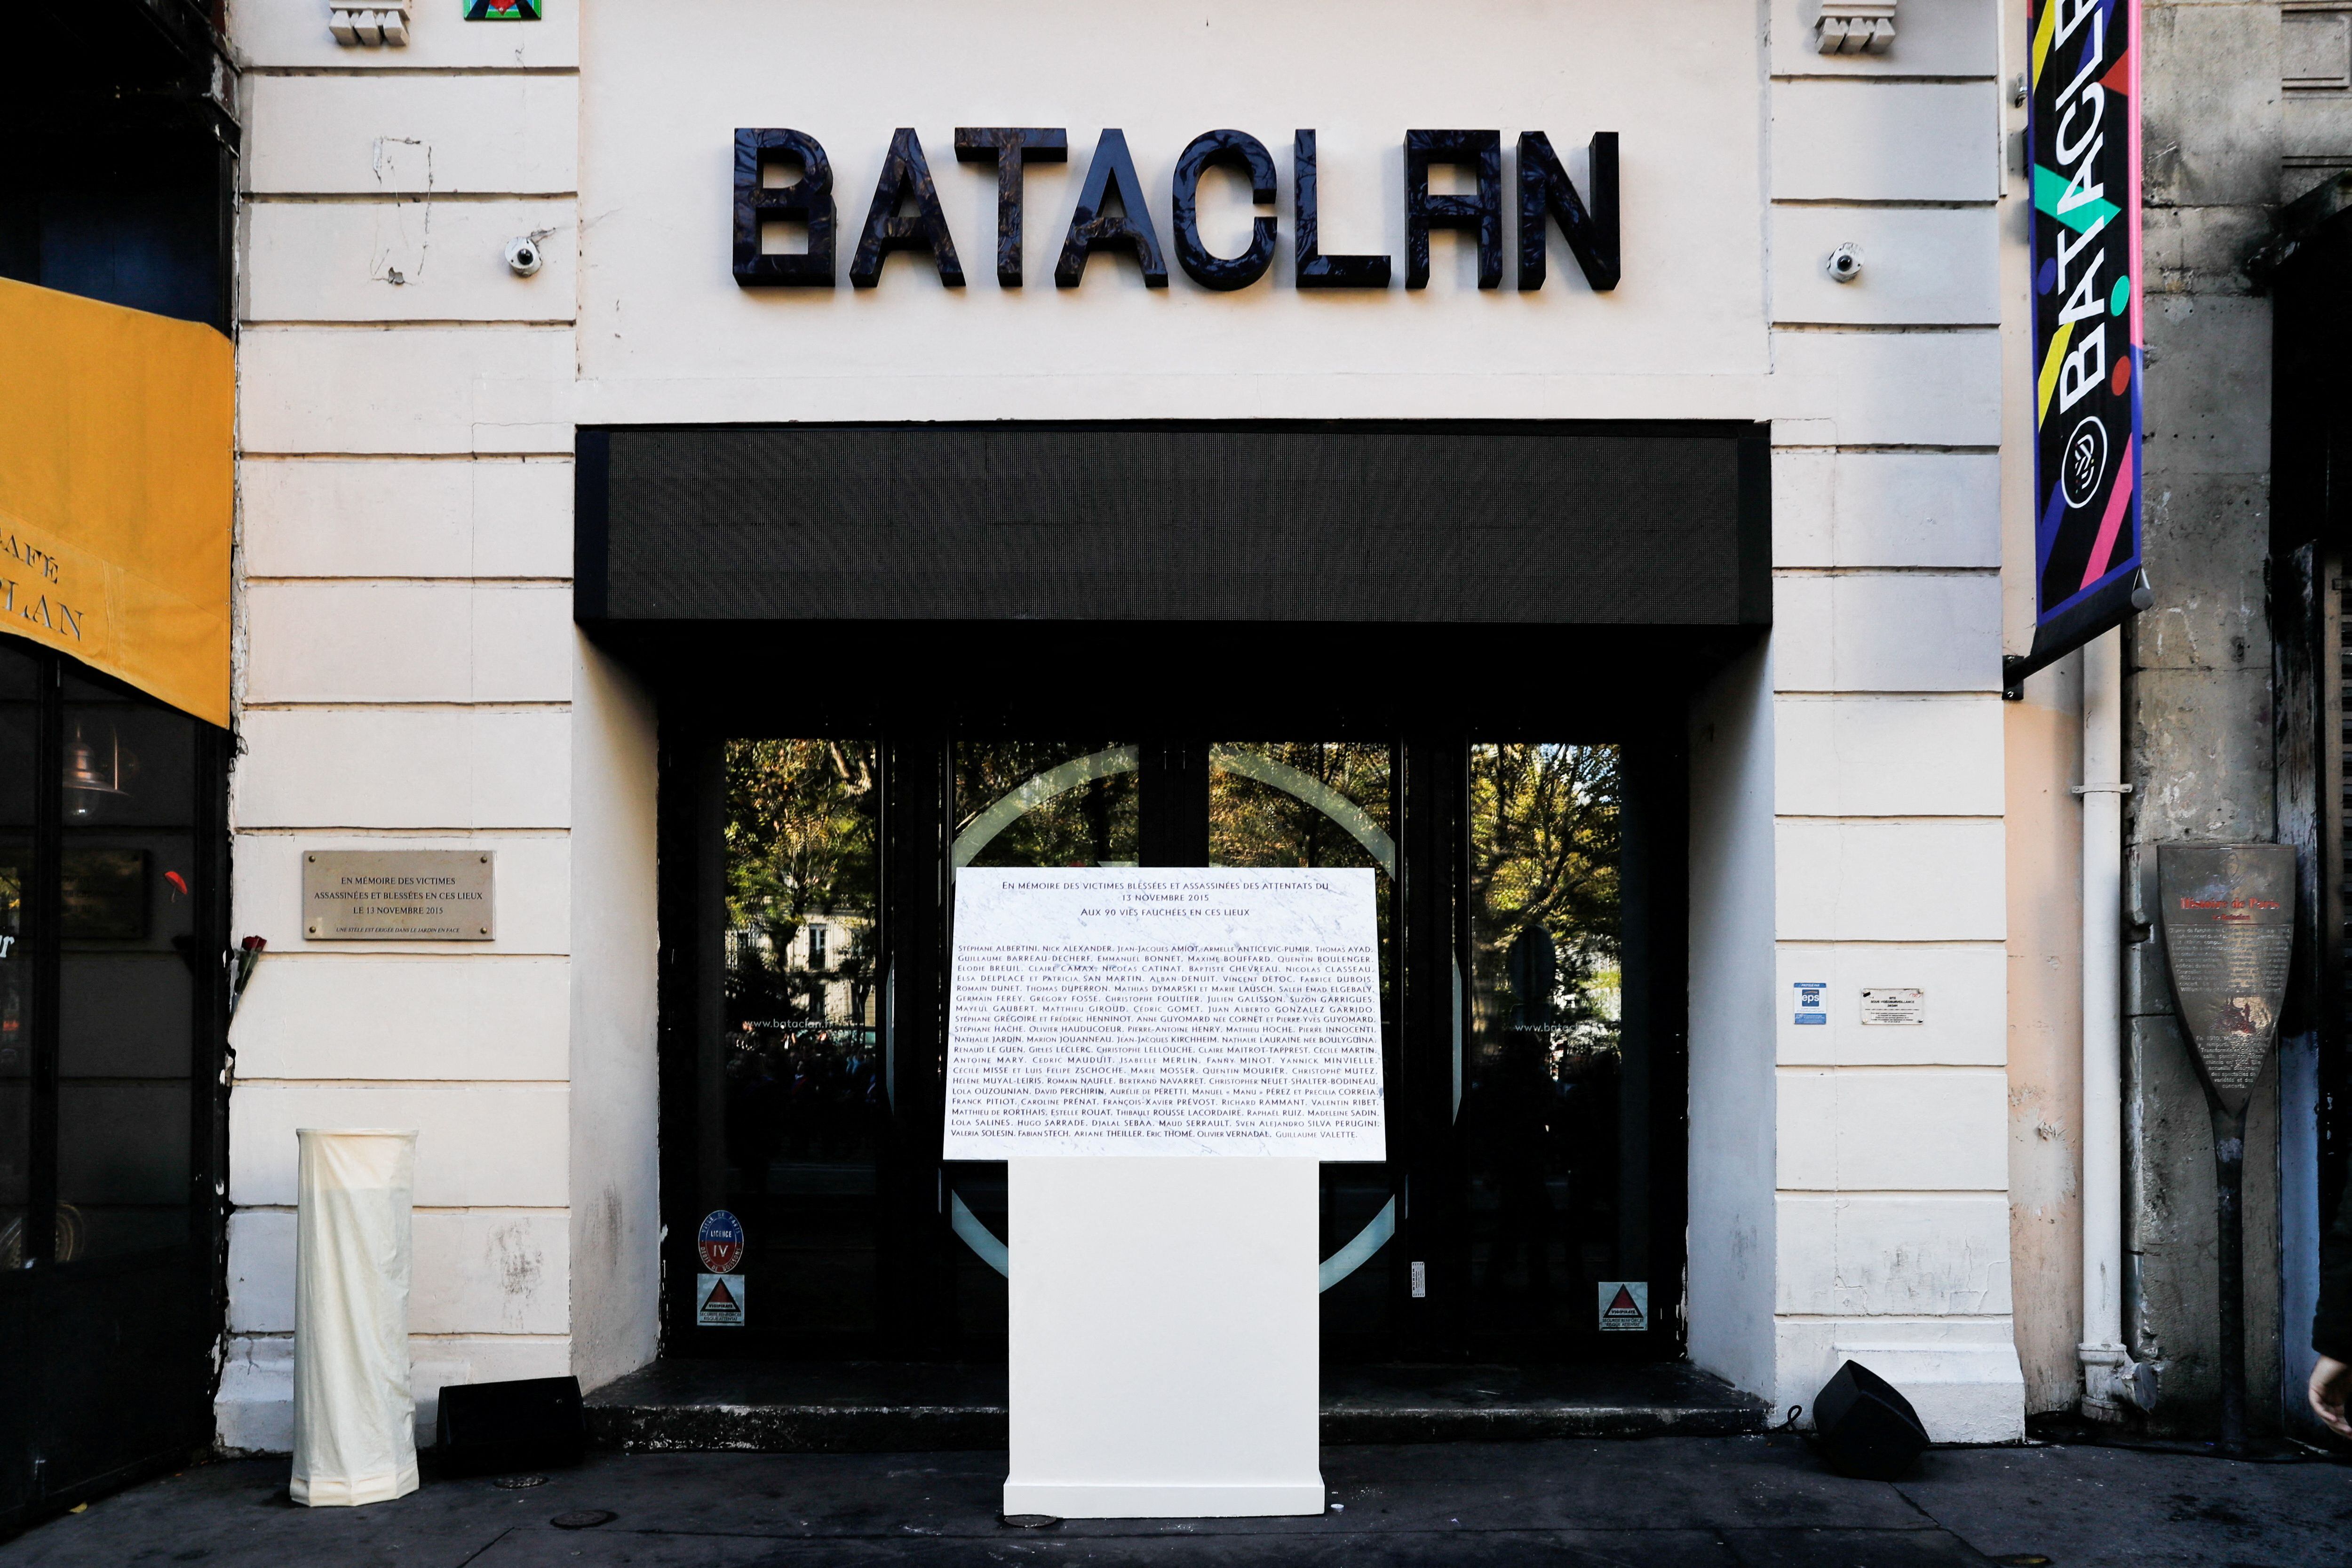 Tributo a las víctimas en la puerta del salón Bataclan, en París. (Teresa Suarez/Pool via REUTERS/File Photo)